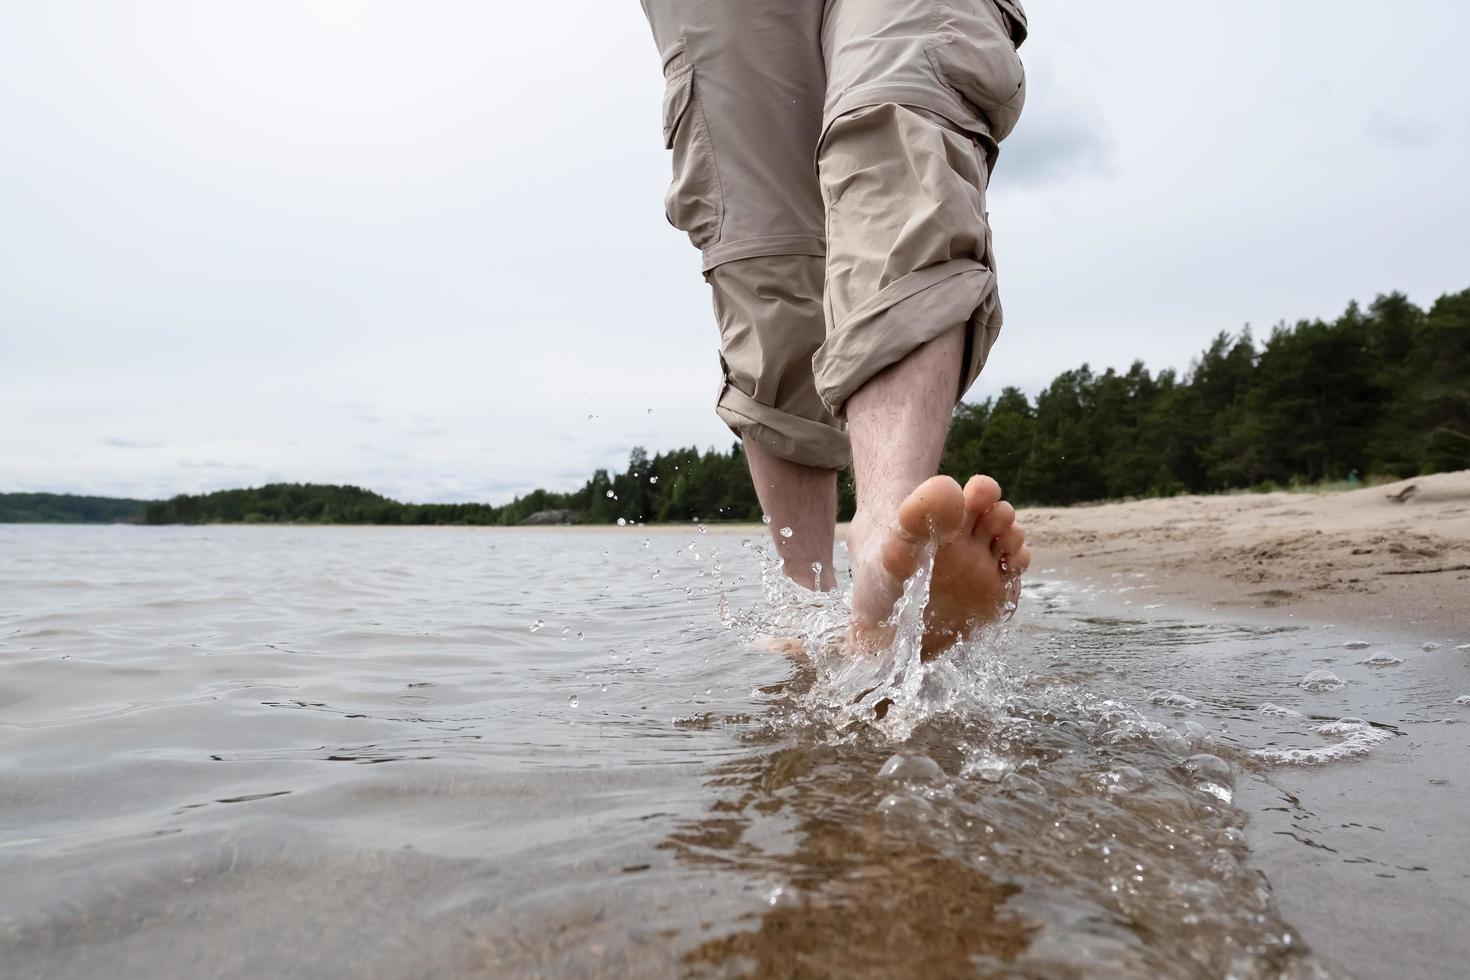 piernas masculinas descalzas con pantalones enrollados caminan sobre el agua a lo largo de la orilla arenosa contra el fondo del lago y los árboles. estilo de vida. foto